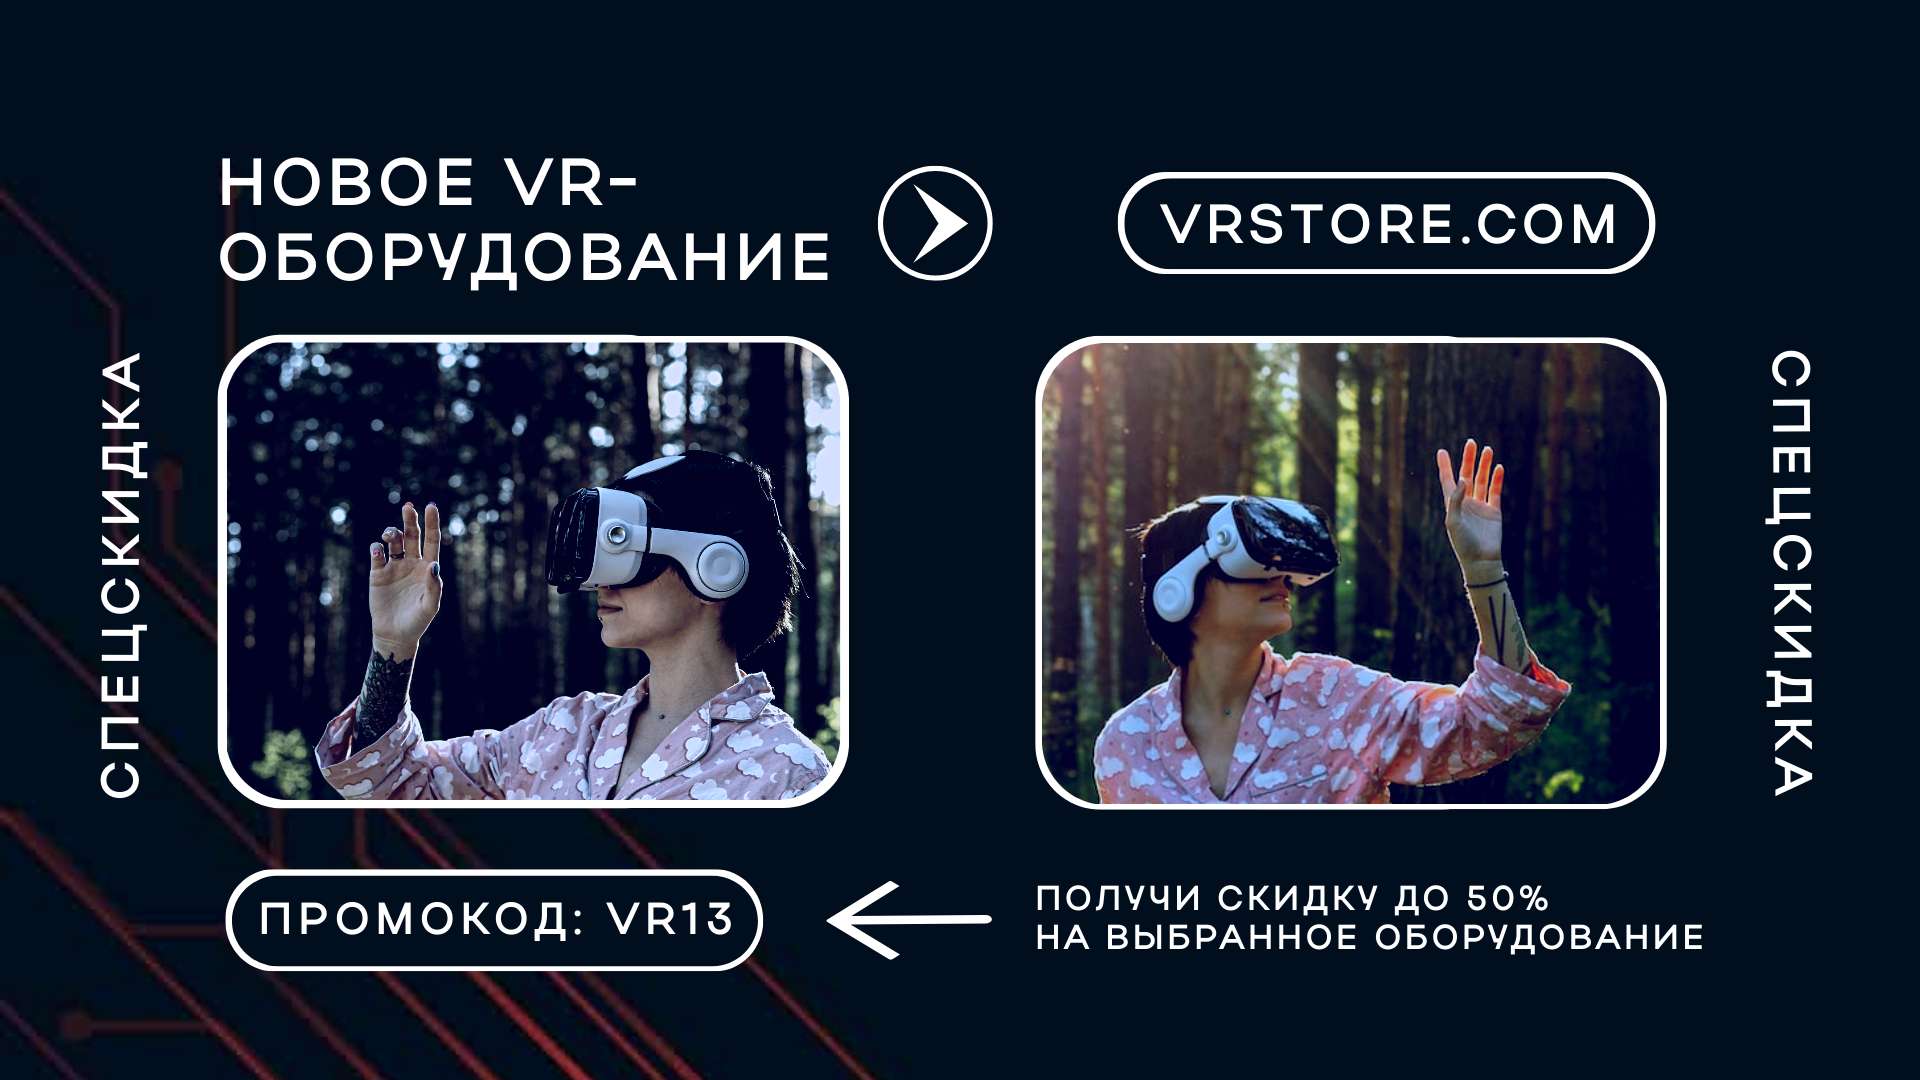 Как сделать очки виртуальной реальности? - Mentamore